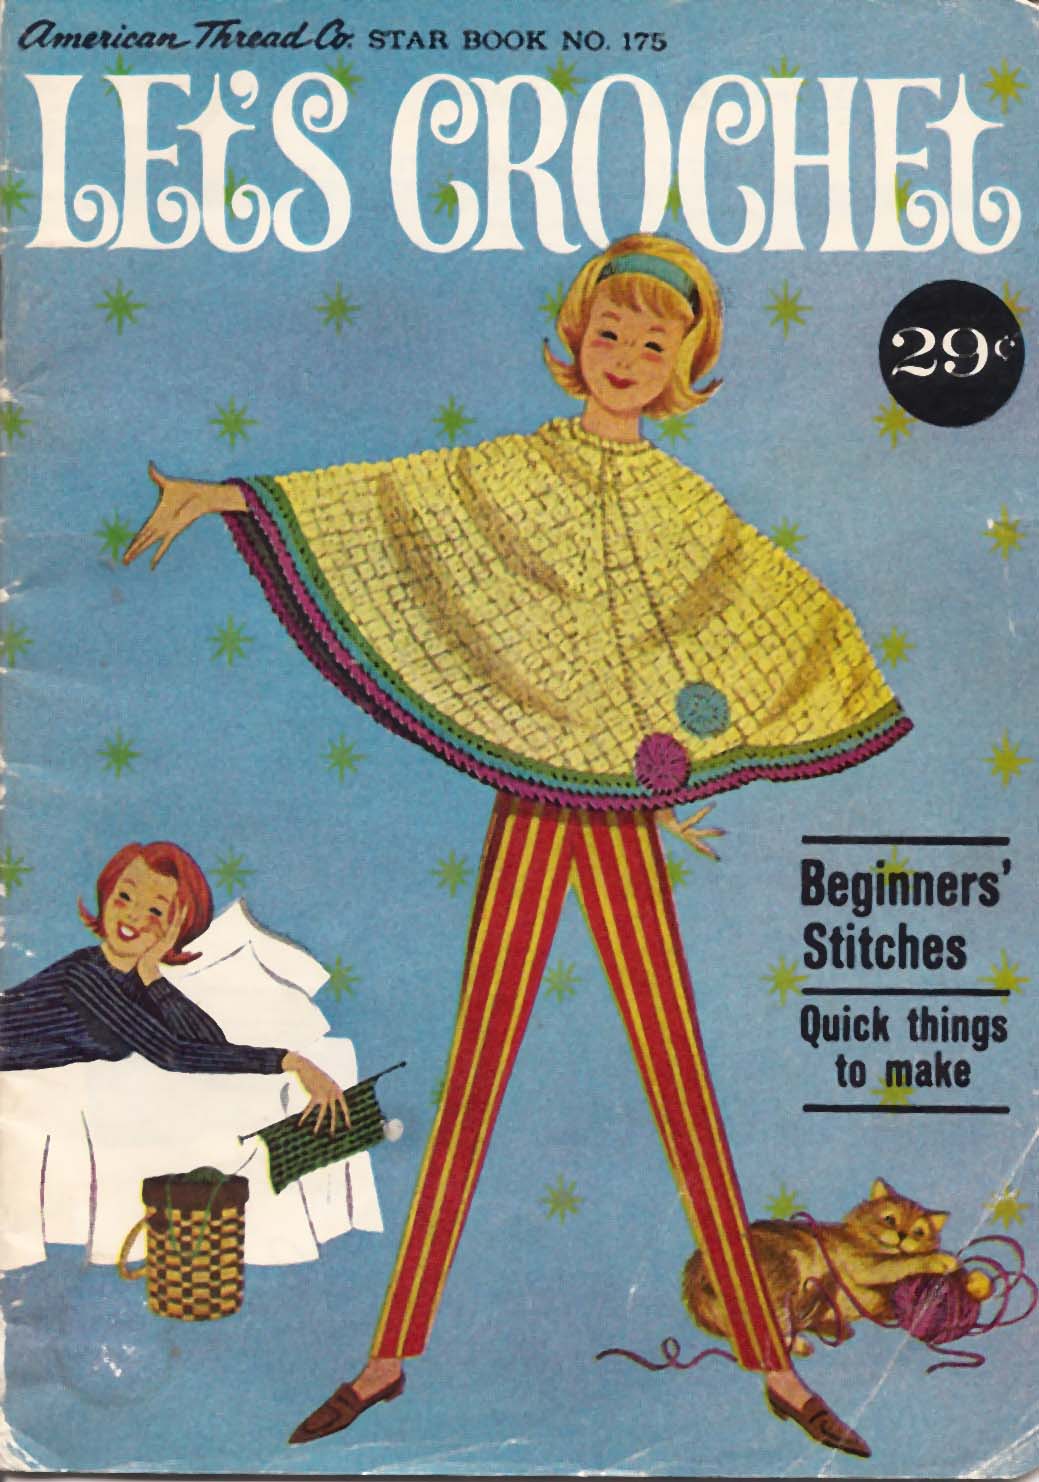 vintage-knit-crochet-shop-talk-lets-crochet-beginner-star-book-from-american-thread